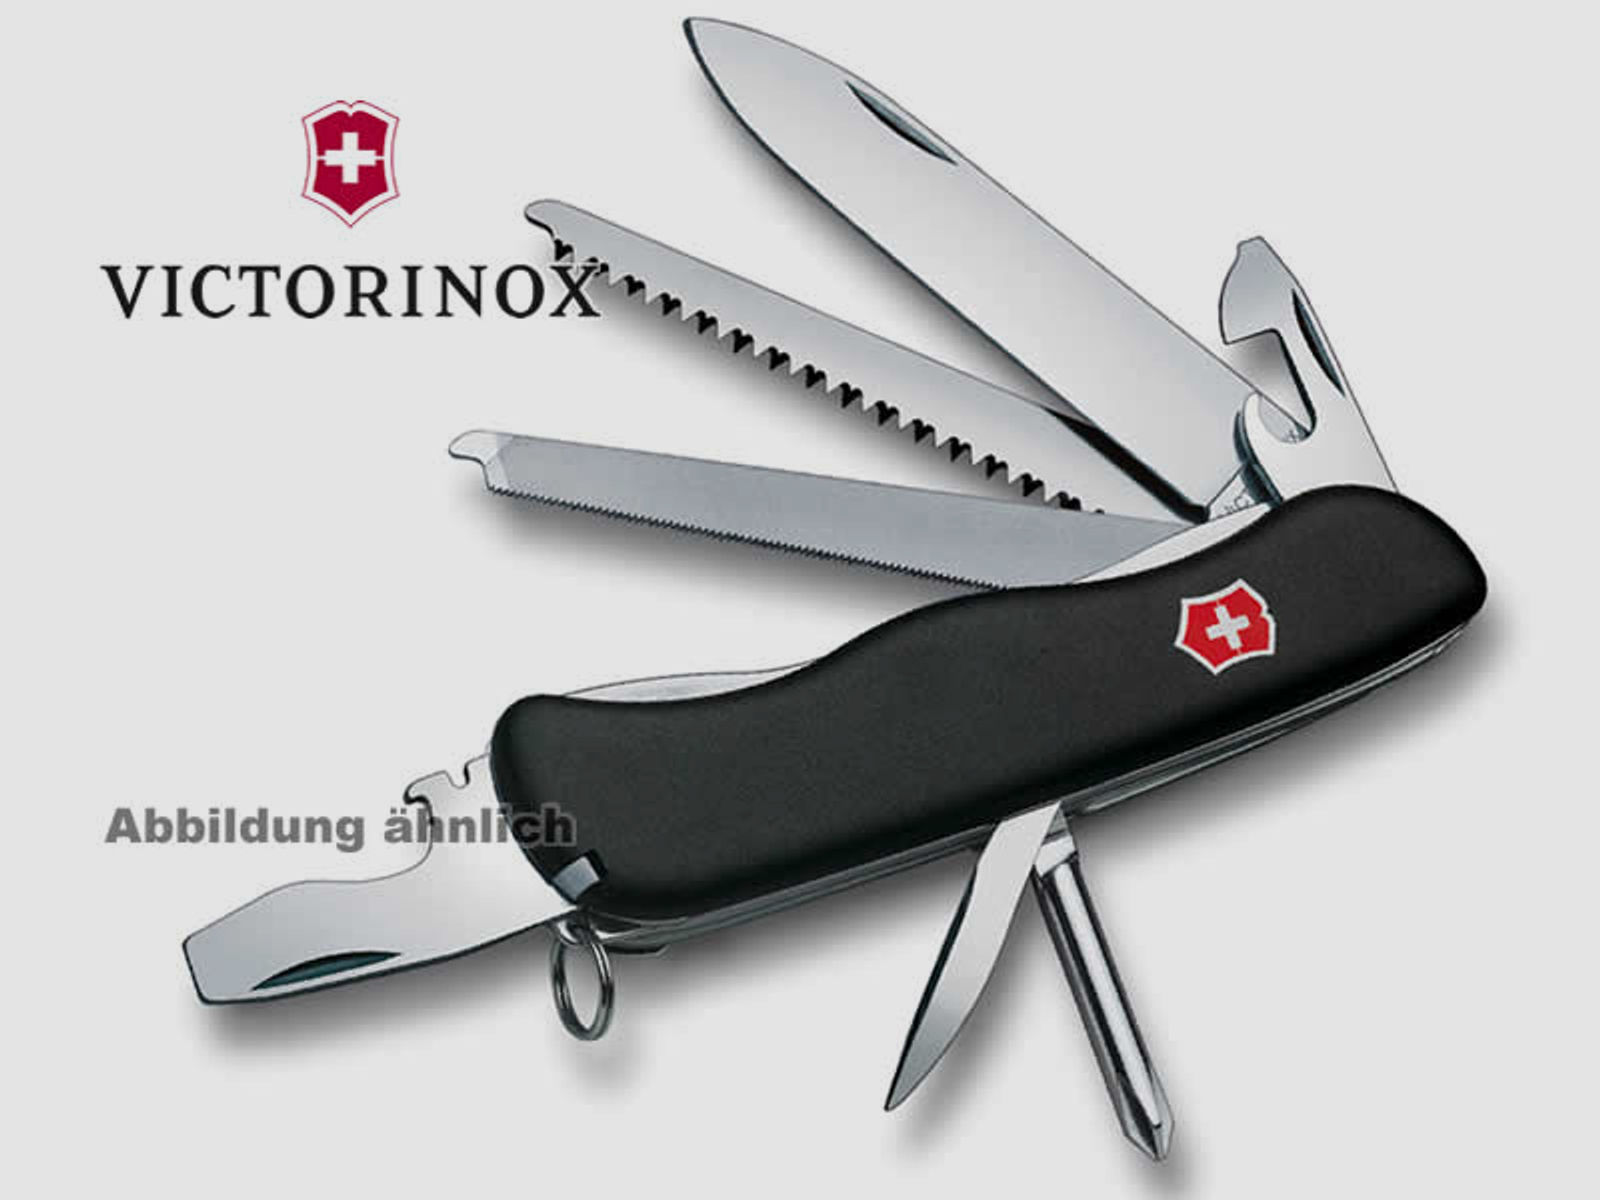 VICTORINOX Feststellmesser LOCKSMITH, 111 mm, 14 Funktionen, Schweizer Taschenmesser